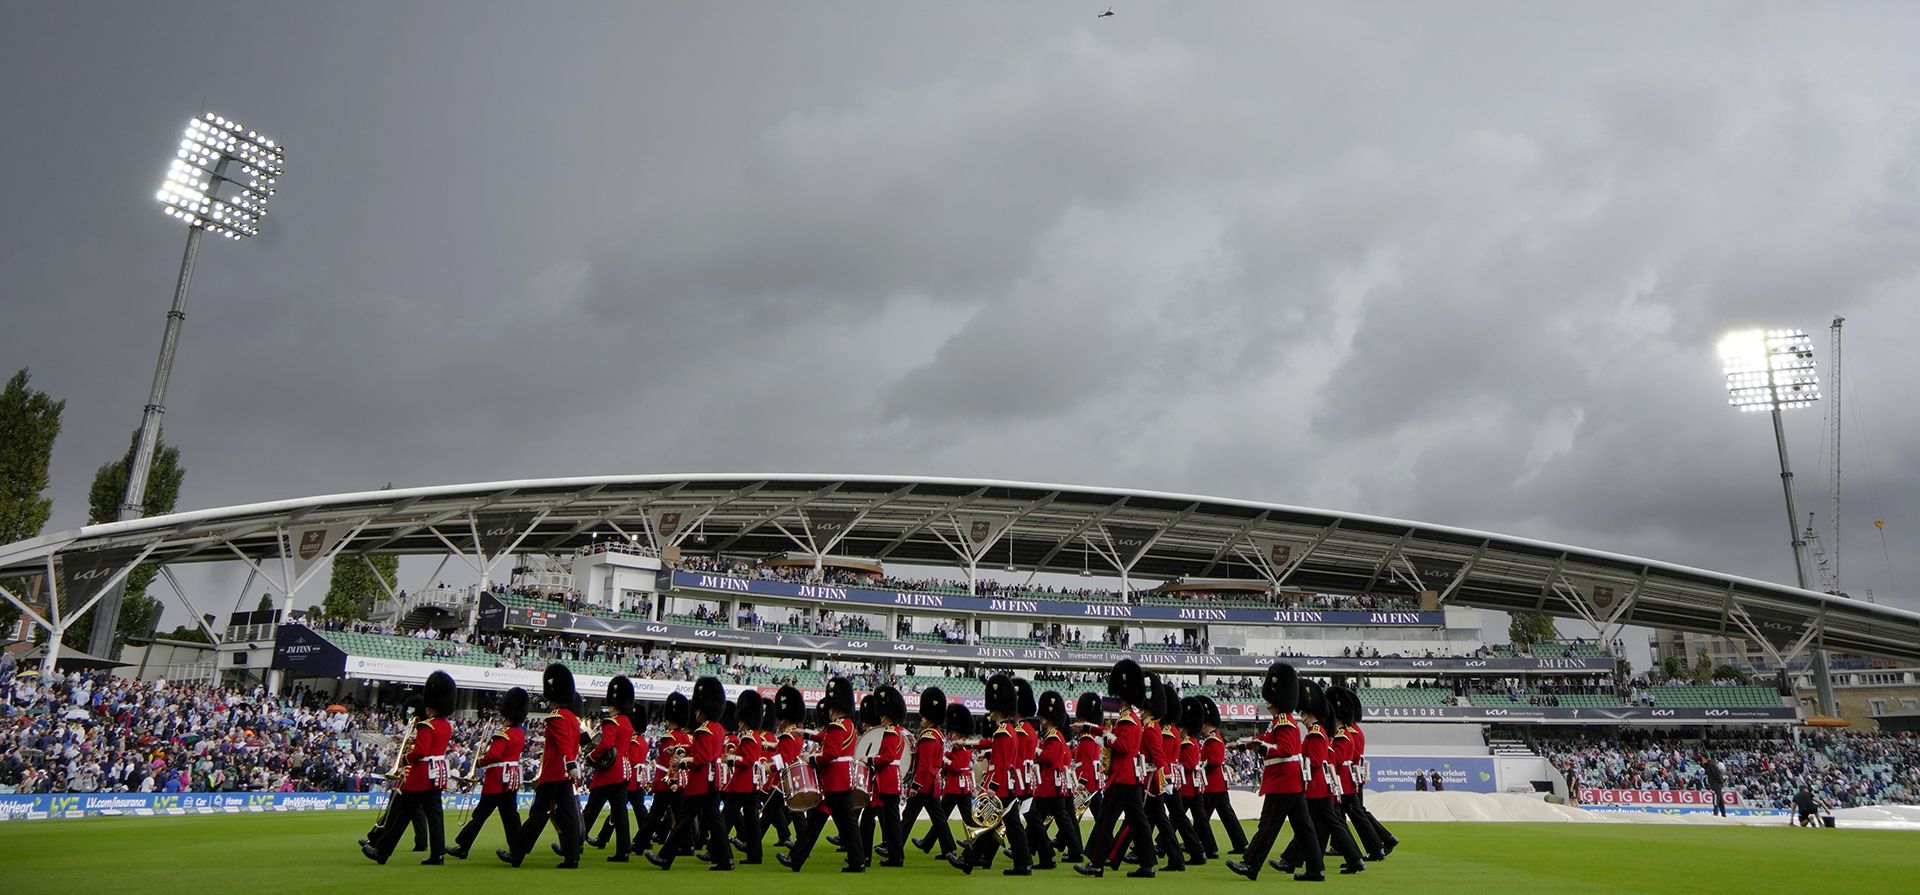 The Band of The Household Cavalry abandona la cancha cuando la lluvia retrasa el inicio del juego en el primer día del partido de prueba entre Inglaterra y Sudáfrica en el campo de cricket Oval de Londres, el jueves 8 de septiembre de 2022.